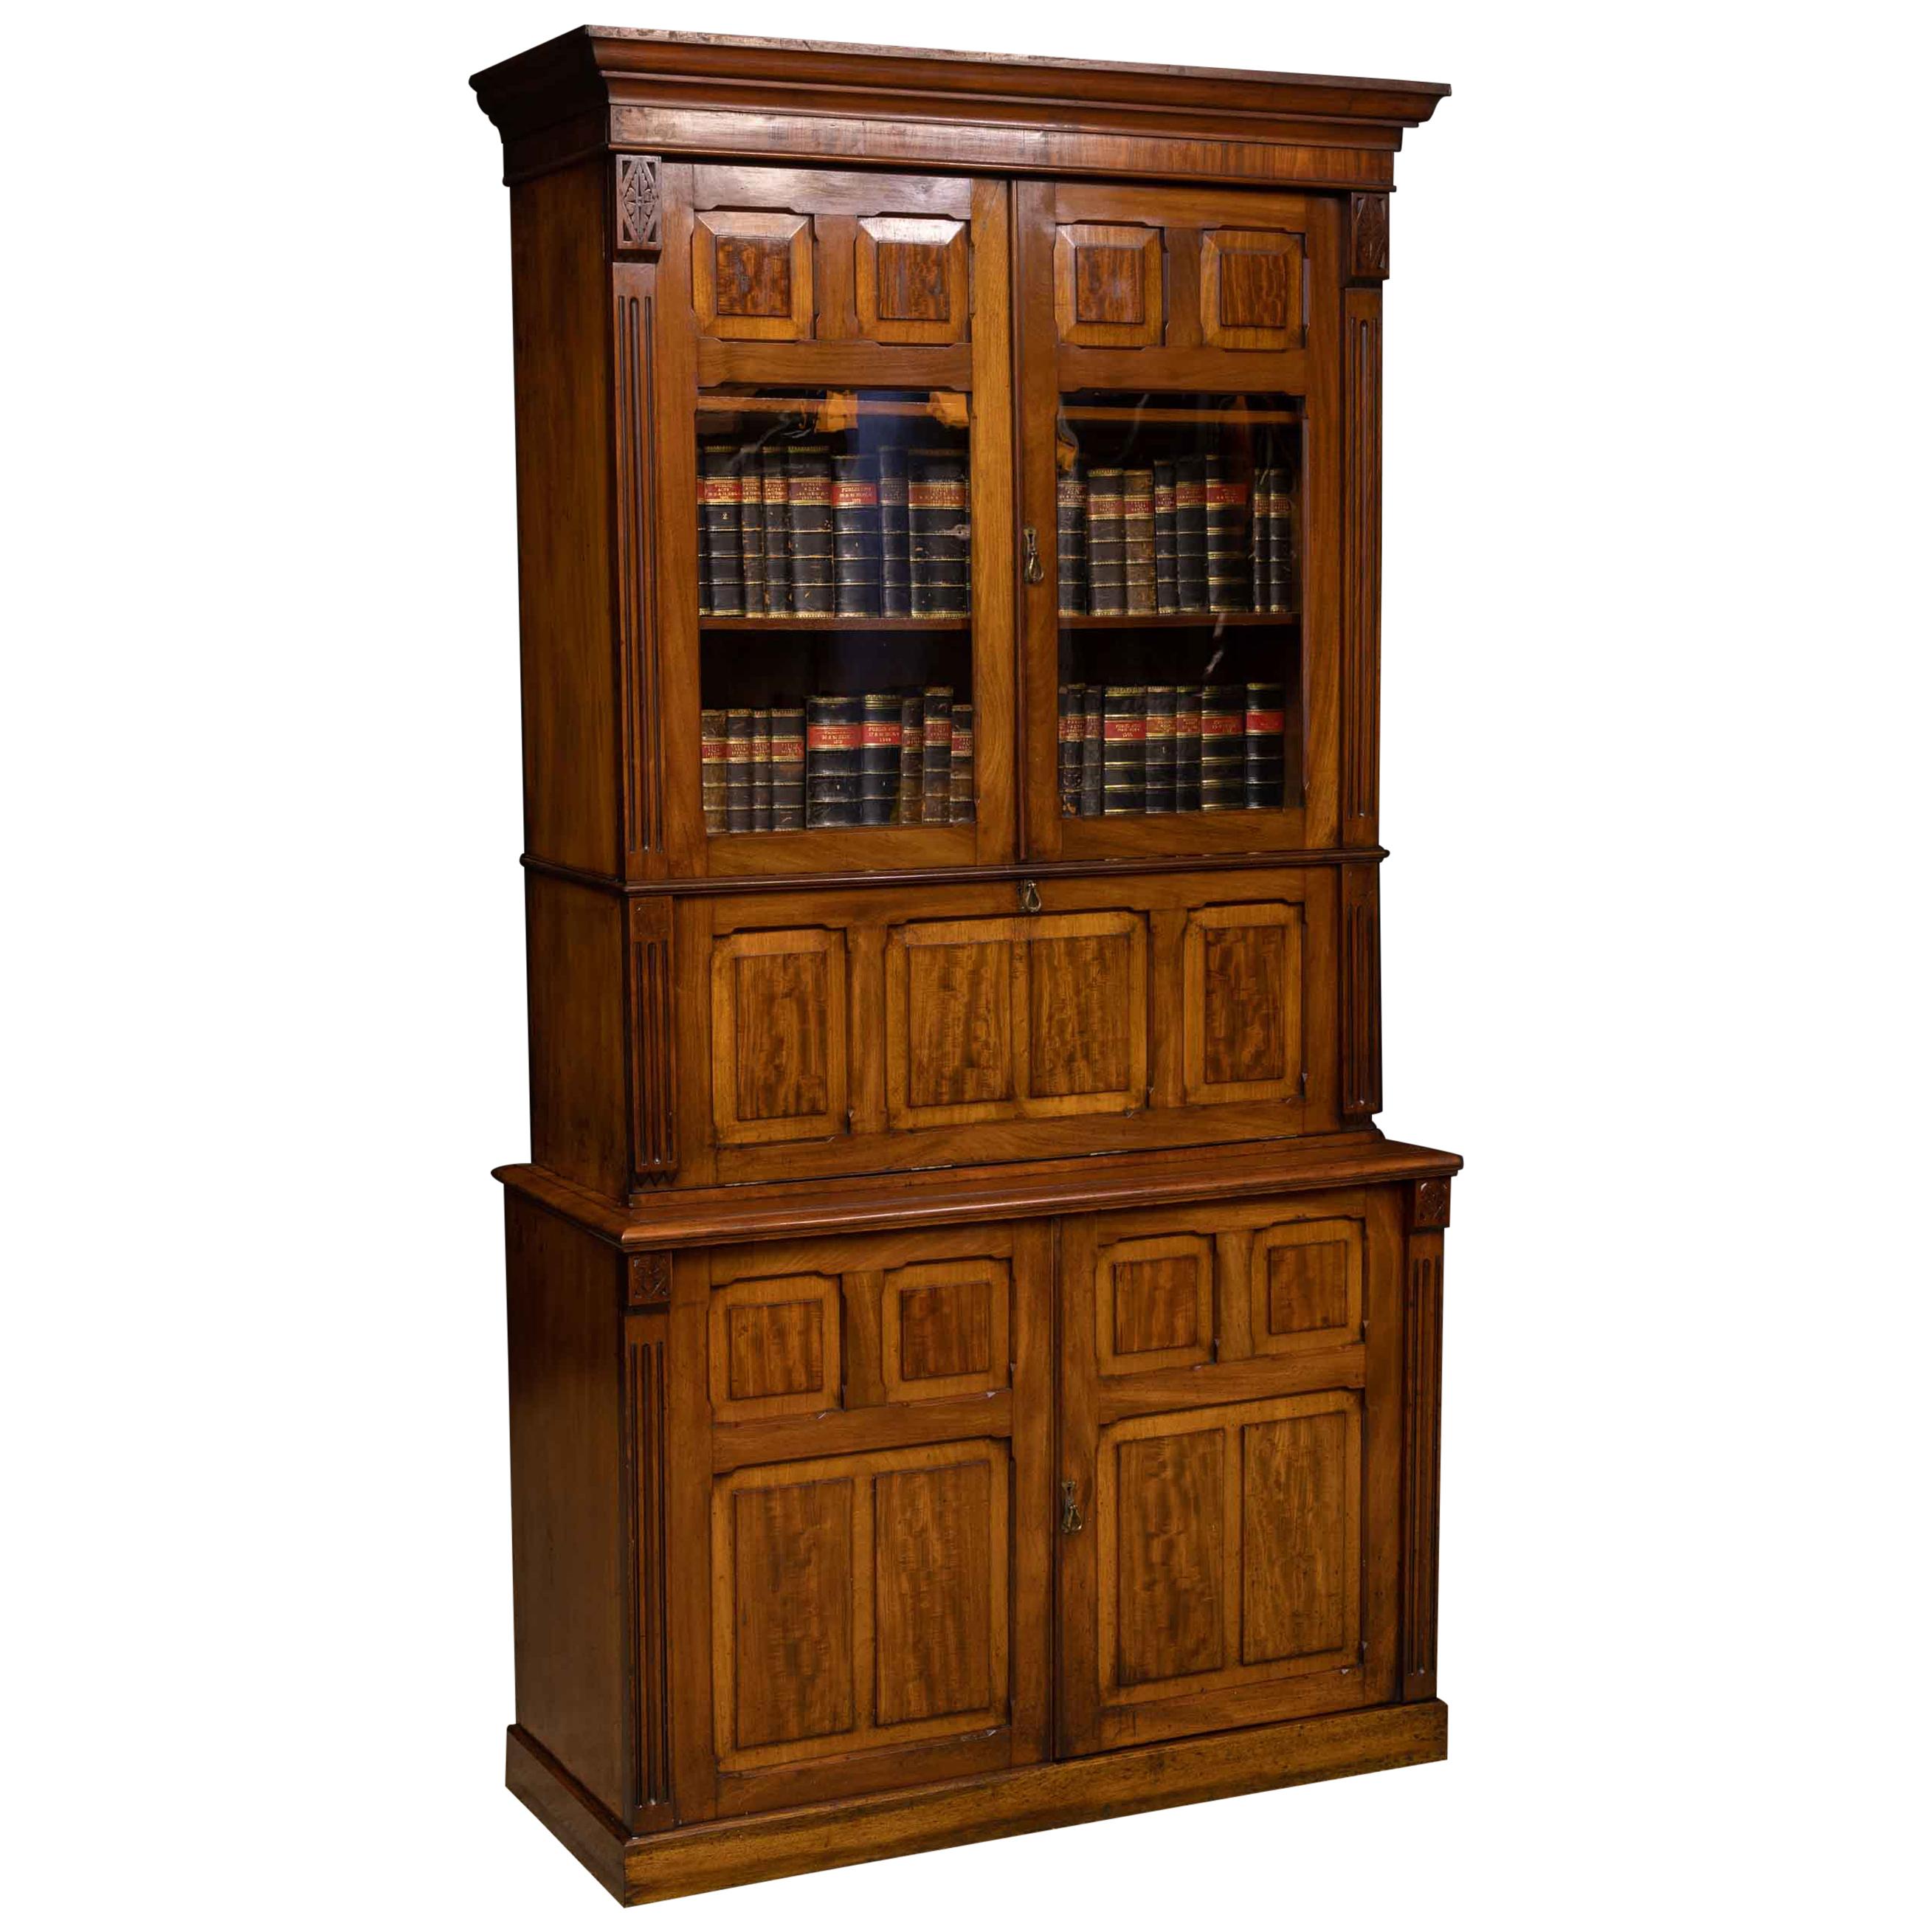 Victorian Mahogany Secretaire Bookcase